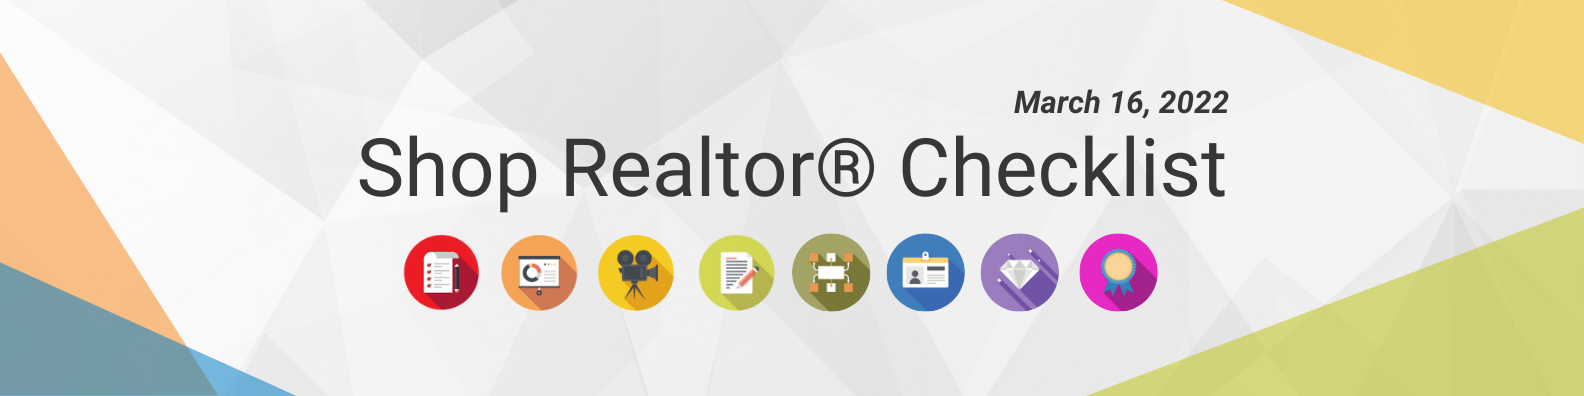 Shop Realtor® Checklist March 16